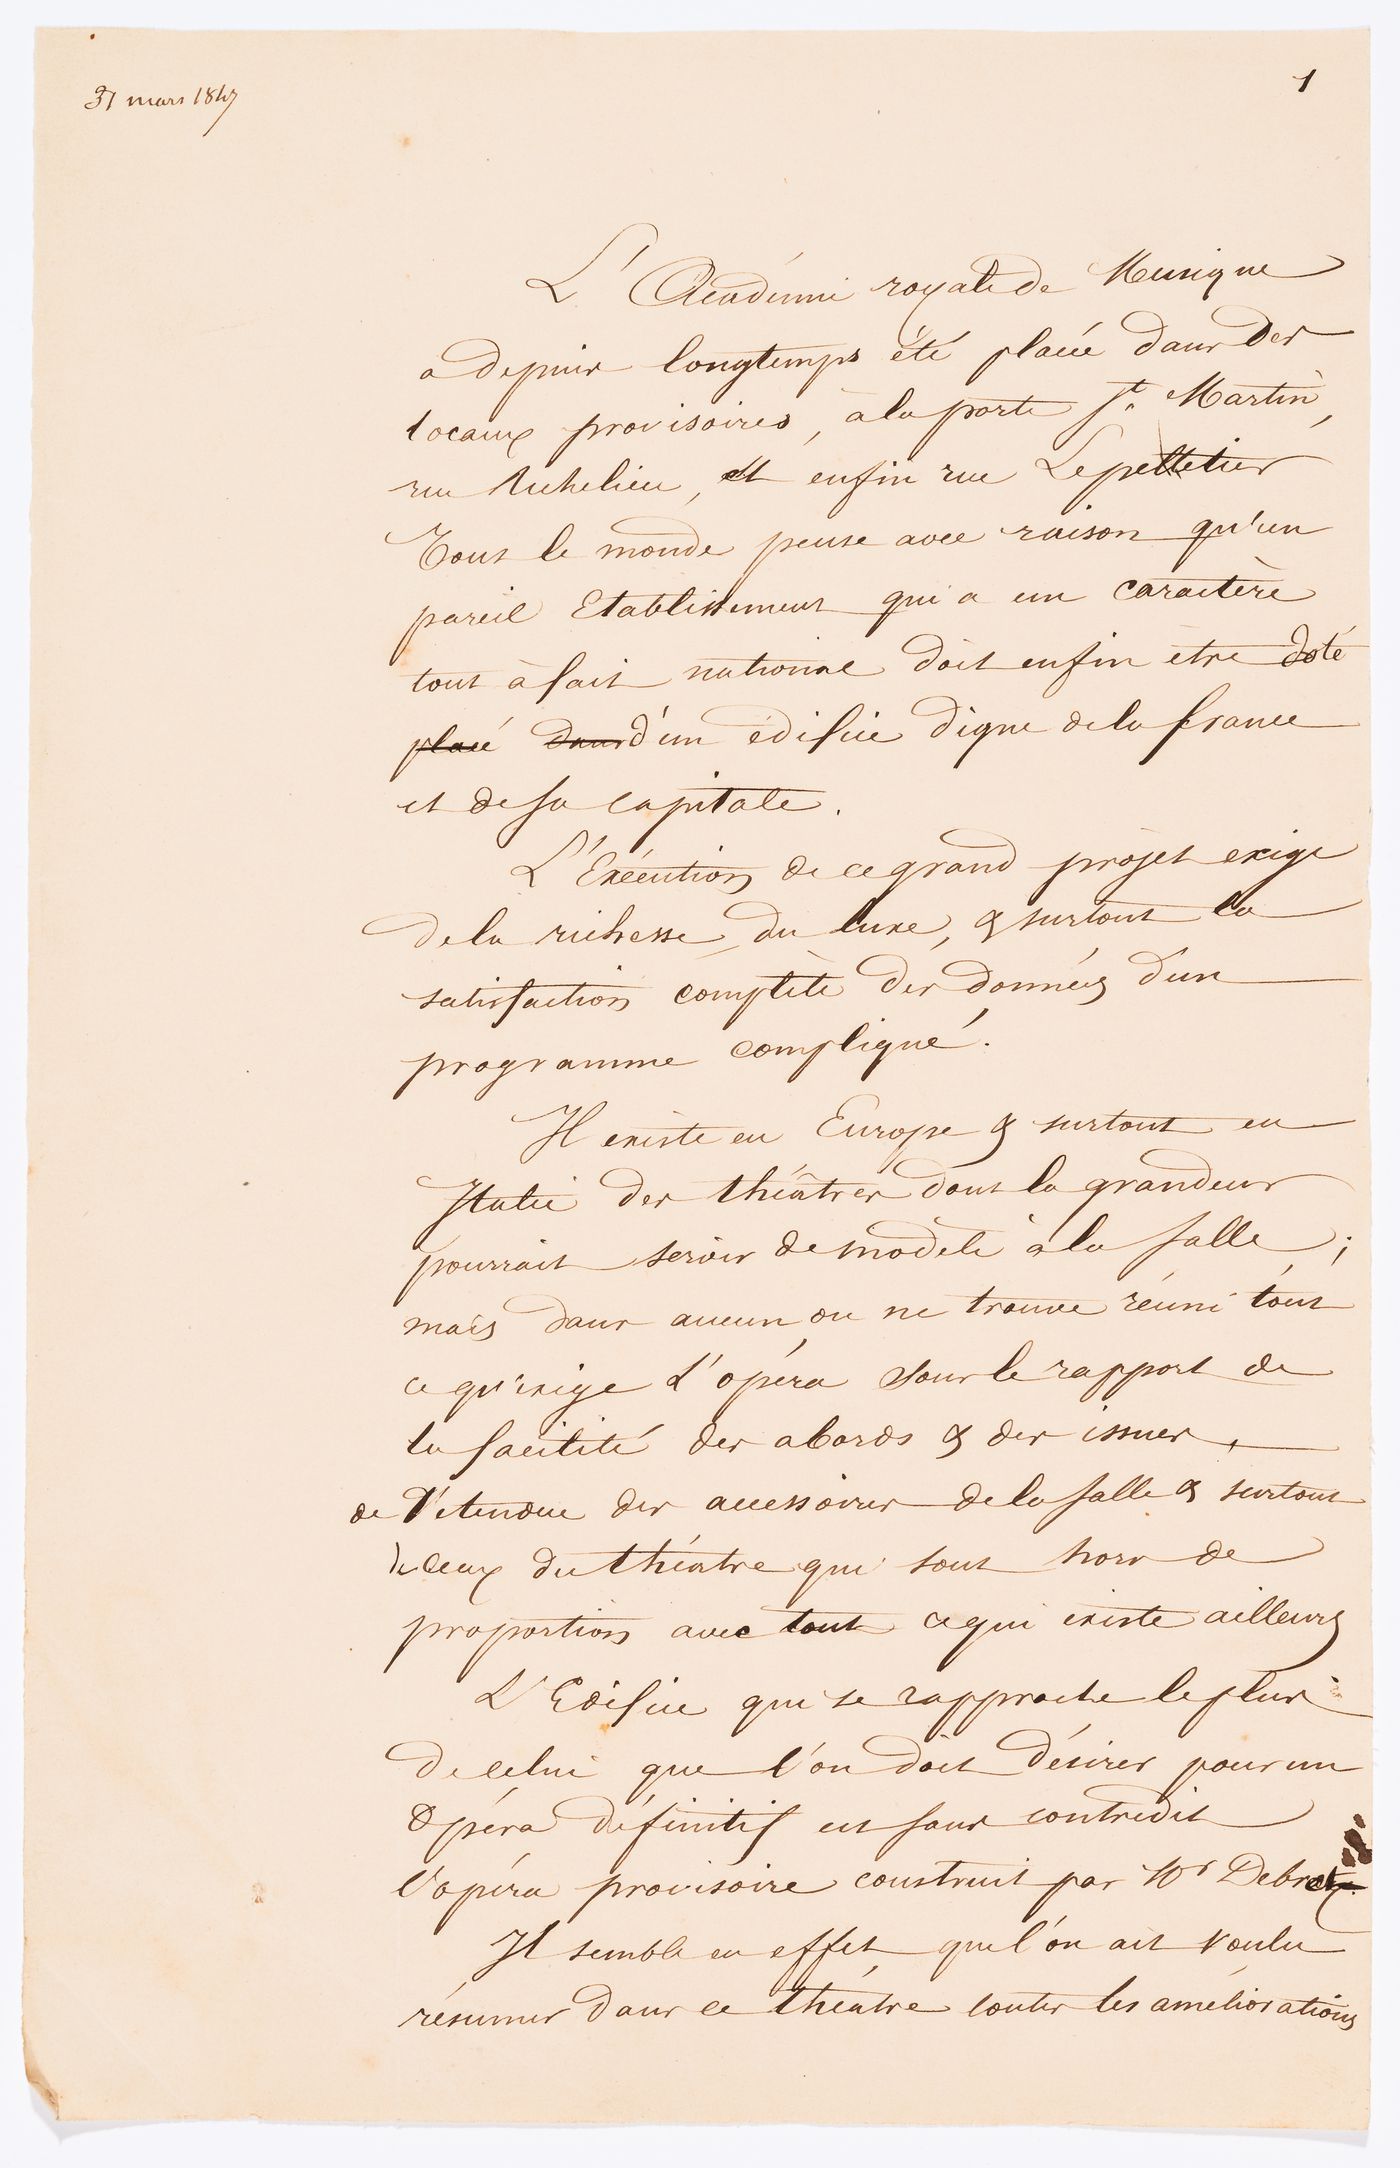 Manuscript concerning the construction of an opera house for the Académie royale de musique